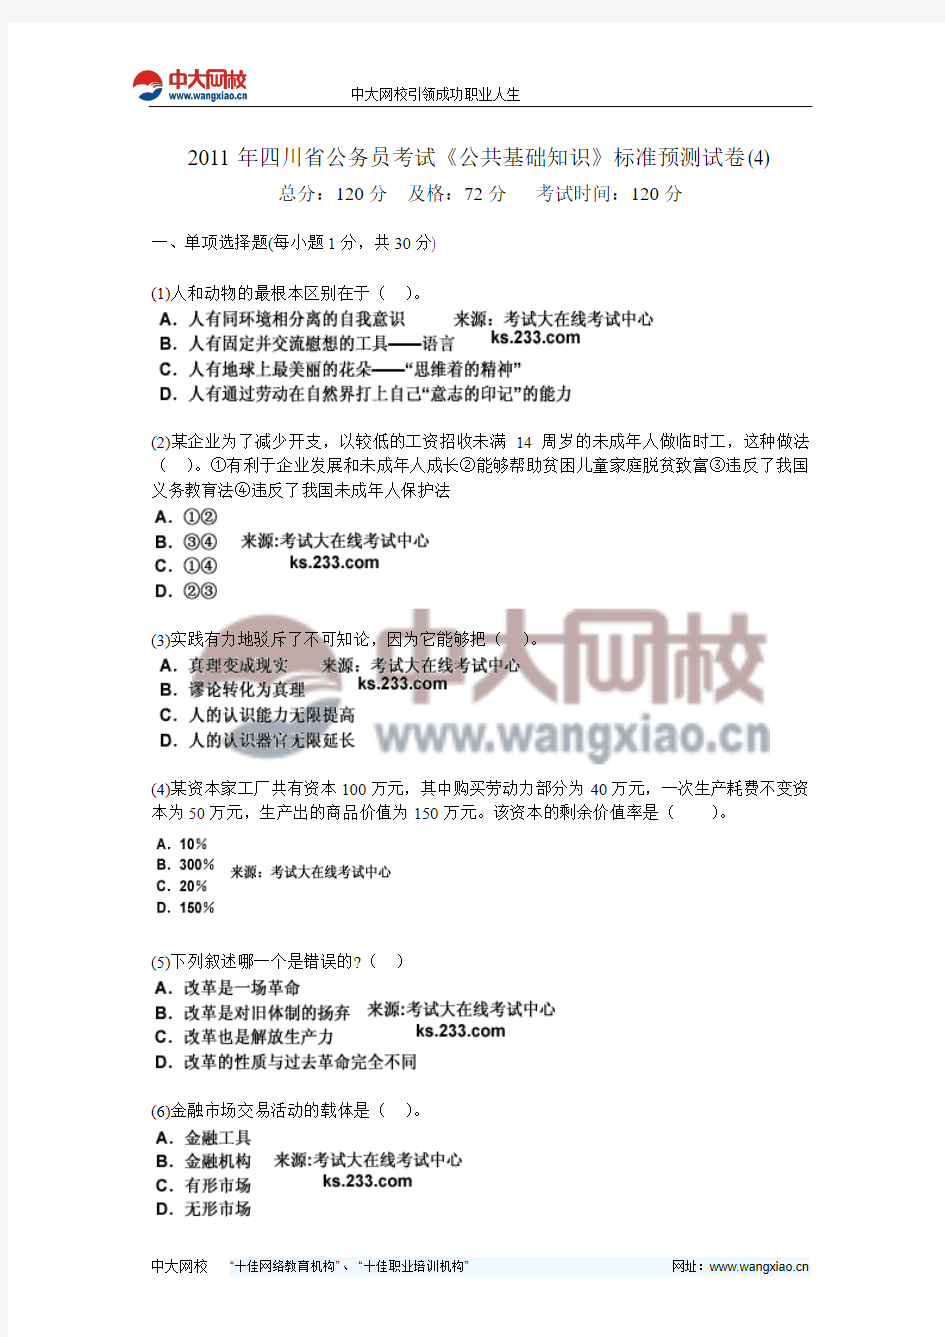 2011年四川省公务员考试《公共基础知识》标准预测试卷(4)-中大网校